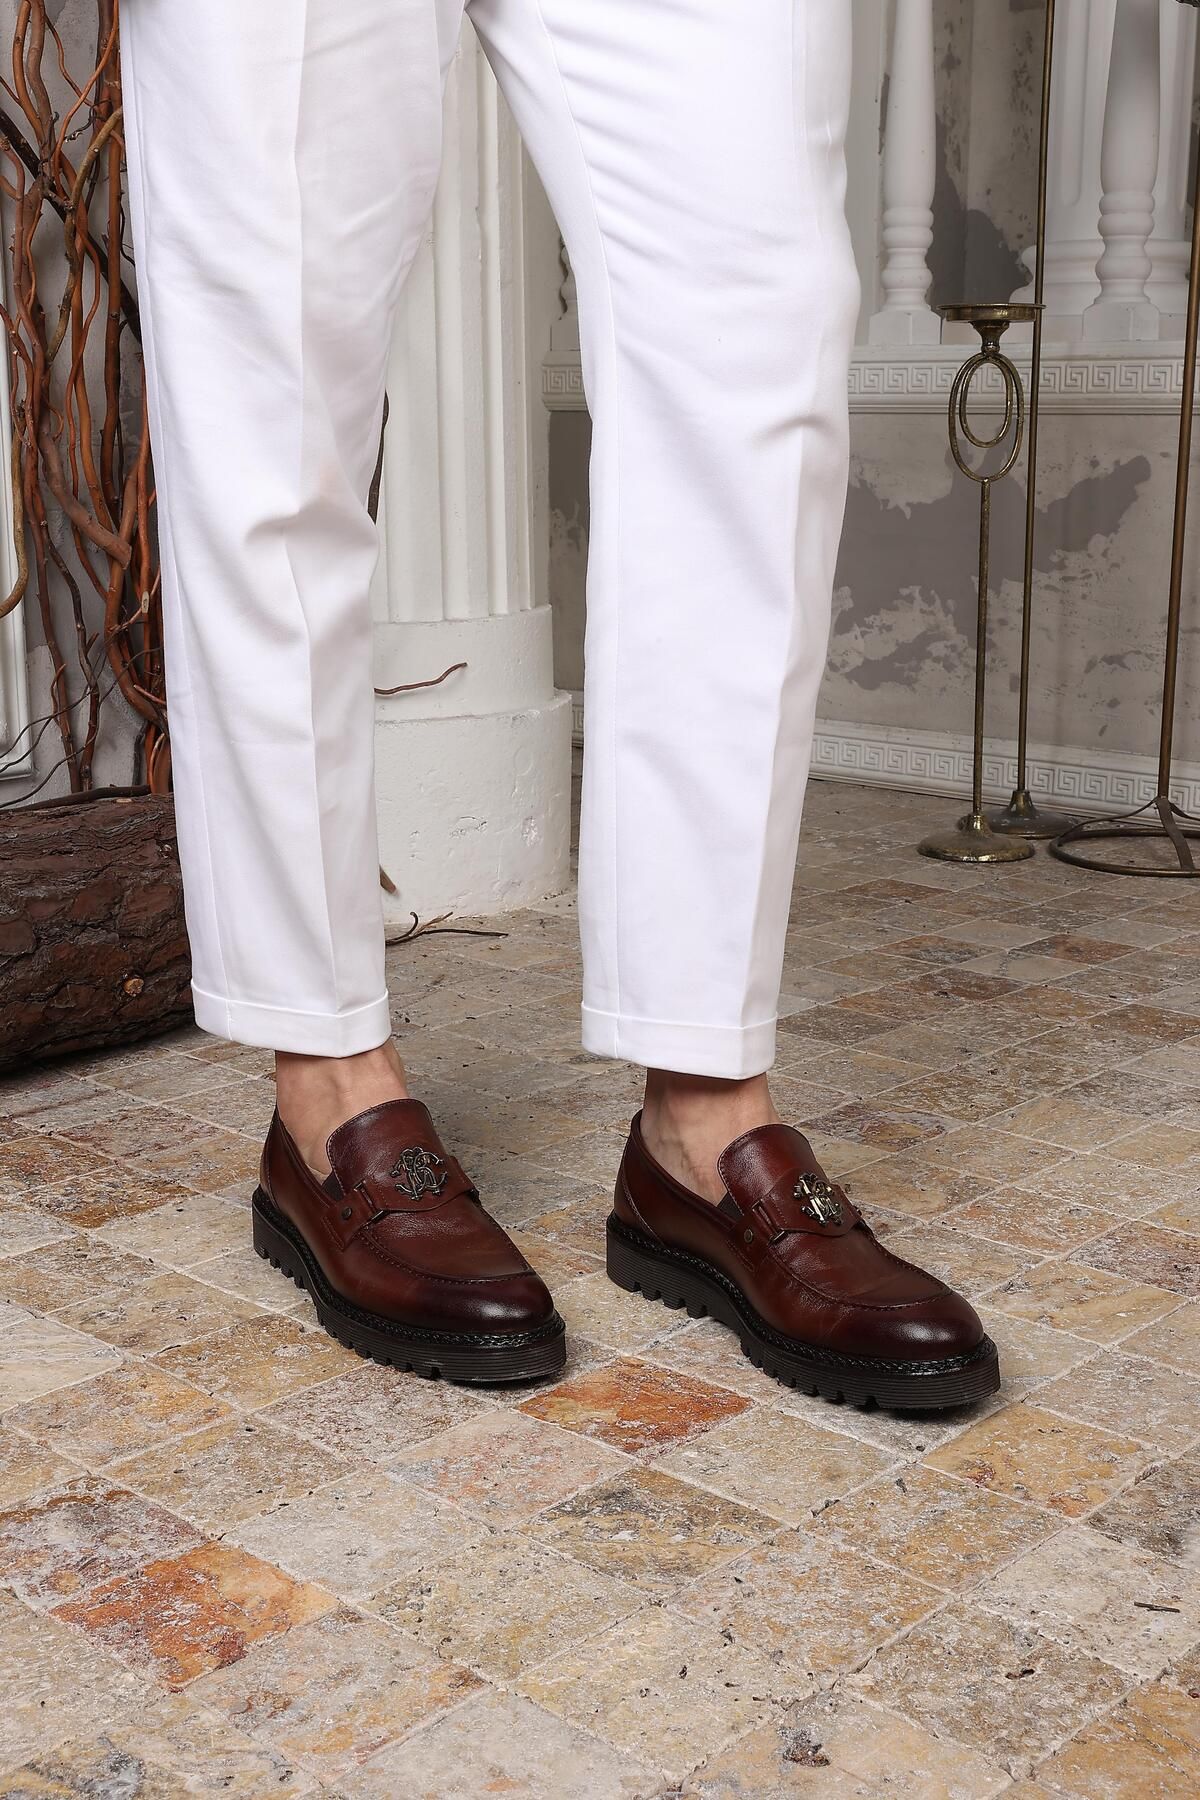 CassidoShoes Erkek Hakiki Deri Eva Taban Tokalı Tarz Taba Kahverengi Klasik Ayakkabı 023-60015